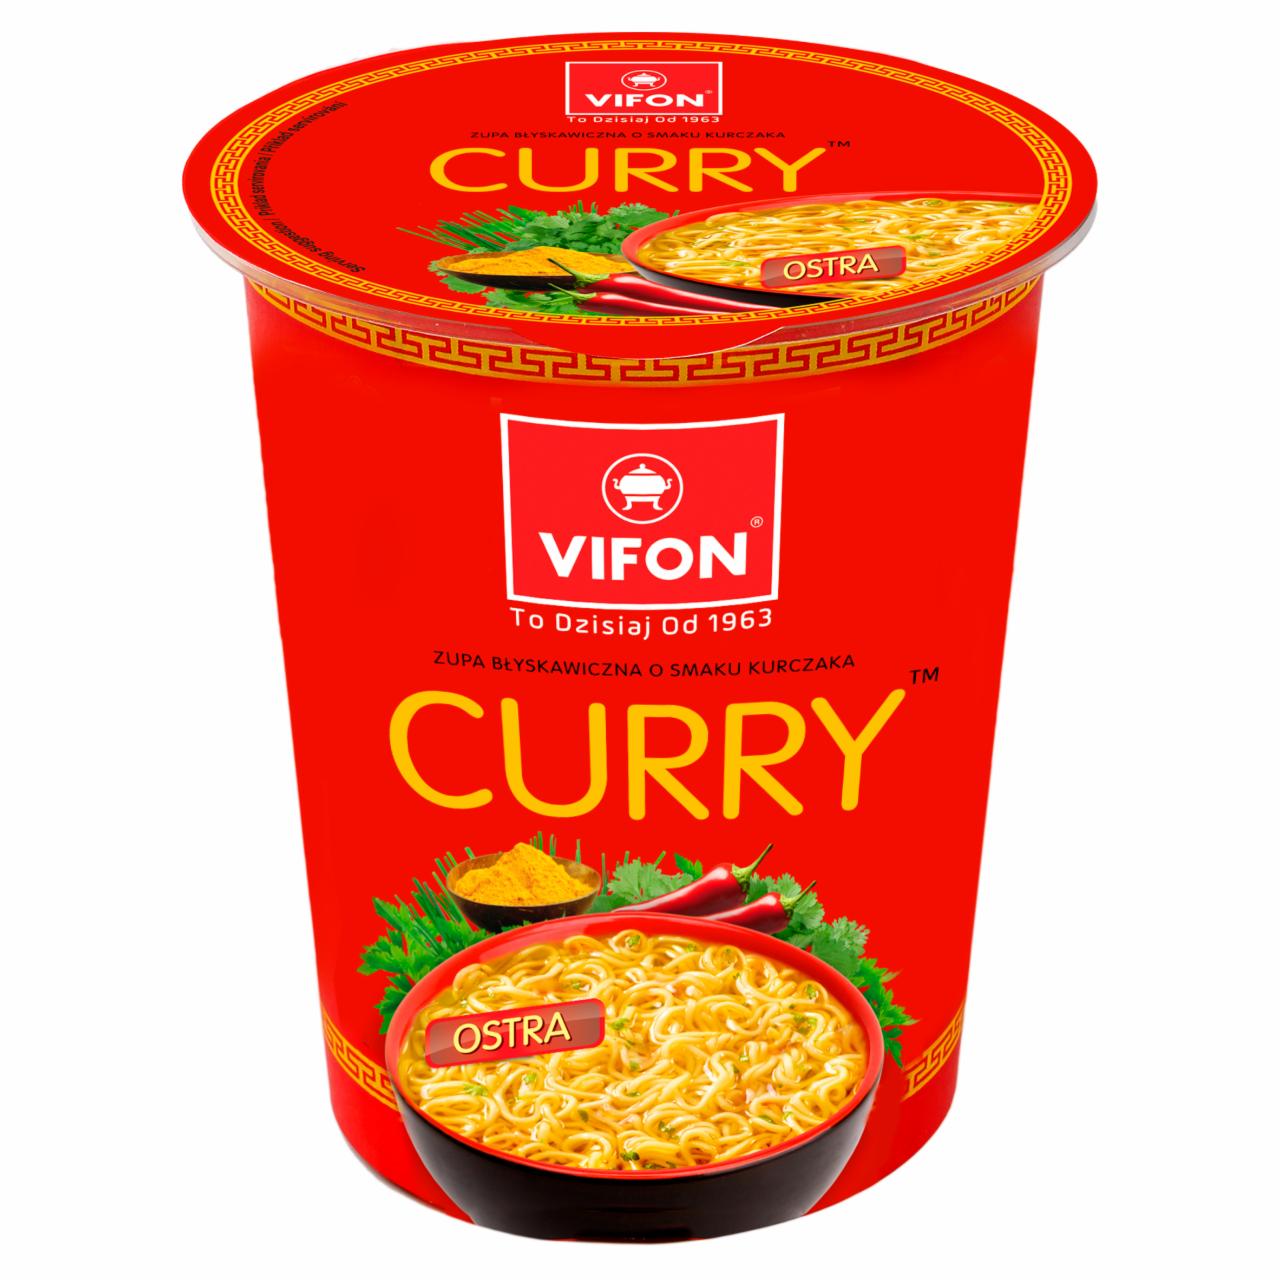 Képek - Vifon curry csirke ízű instant leves 60 g